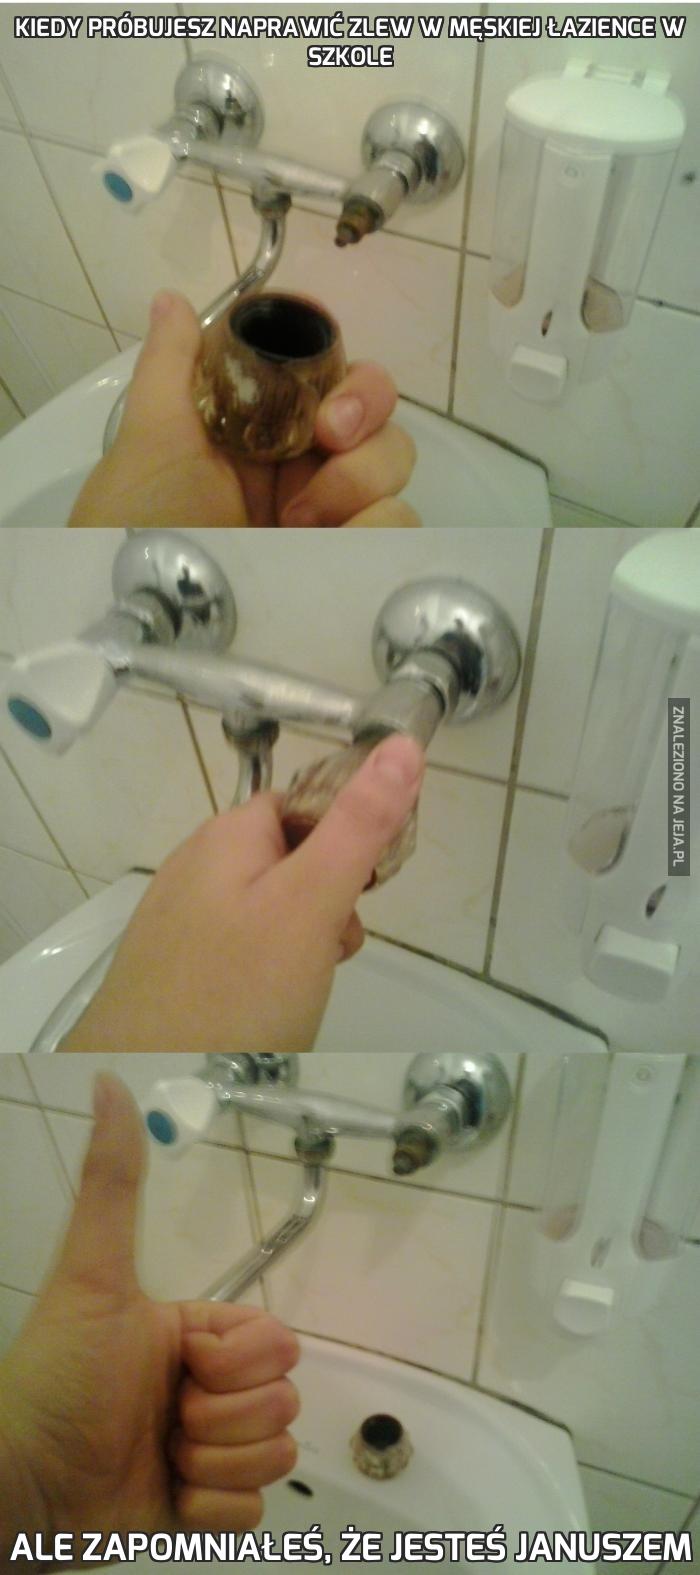 Kiedy próbujesz naprawić zlew w męskiej łazience w szkole